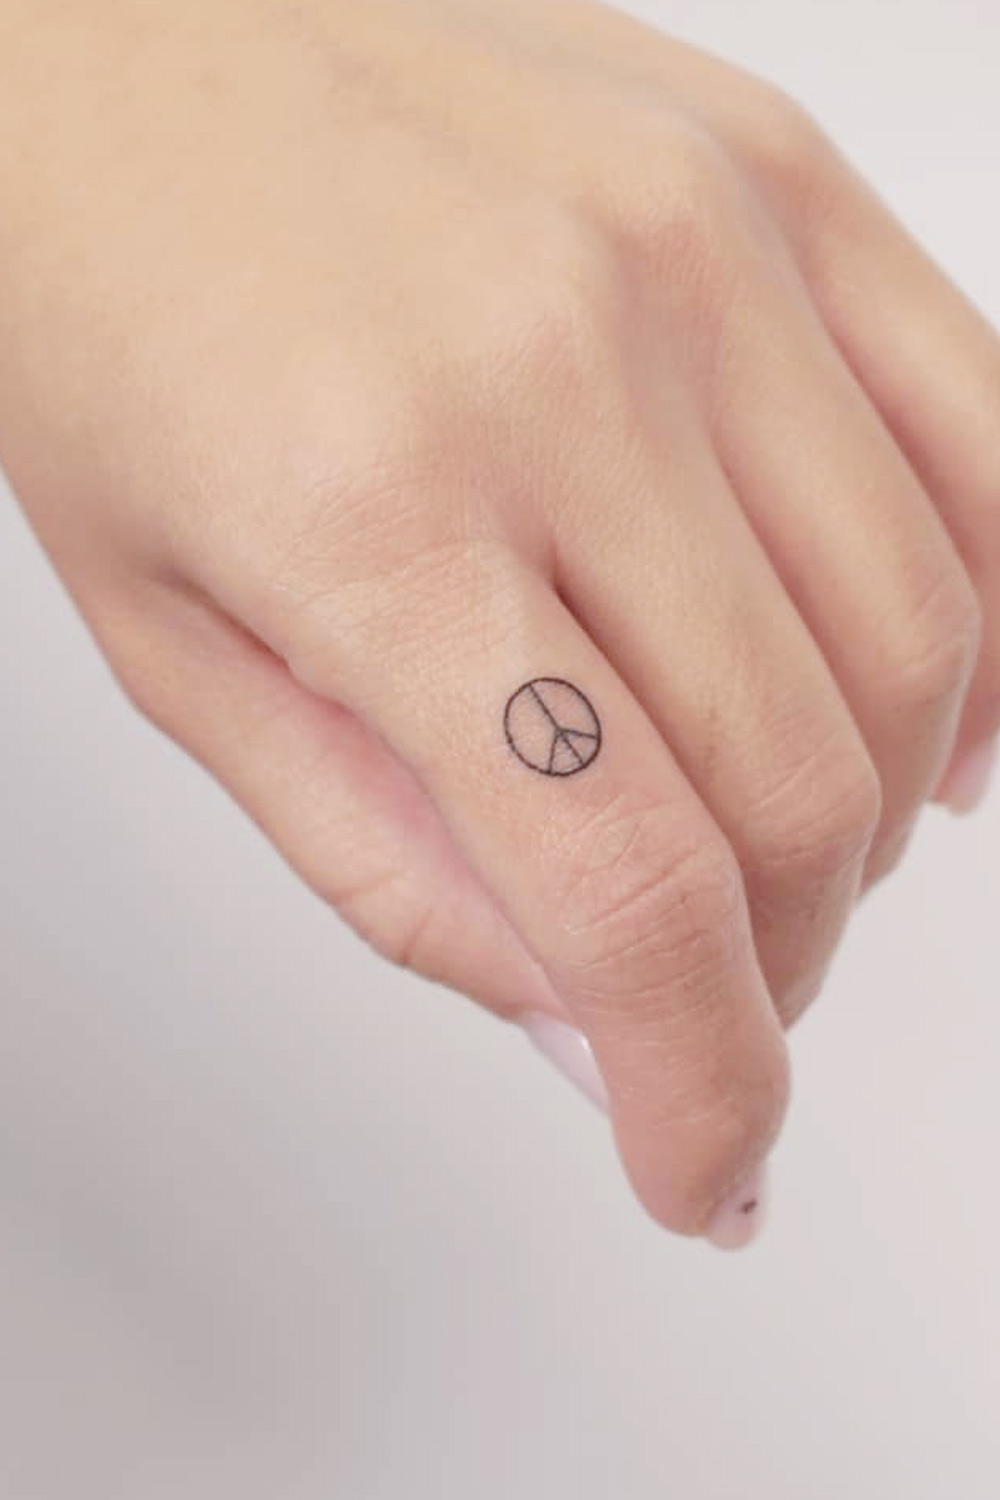 Amaranthine tattoos & piercings - Abstract peace symbol ☑😁 . . . #tattoo  #tattoooftheday #tattoosofinstagram #tattooshop #tattooartist #peace # peacesymbol #peacetattoo #peaceandlove #dehradun #jakhan #dehraduncity  #dehradundiaries #uttarakhand ...